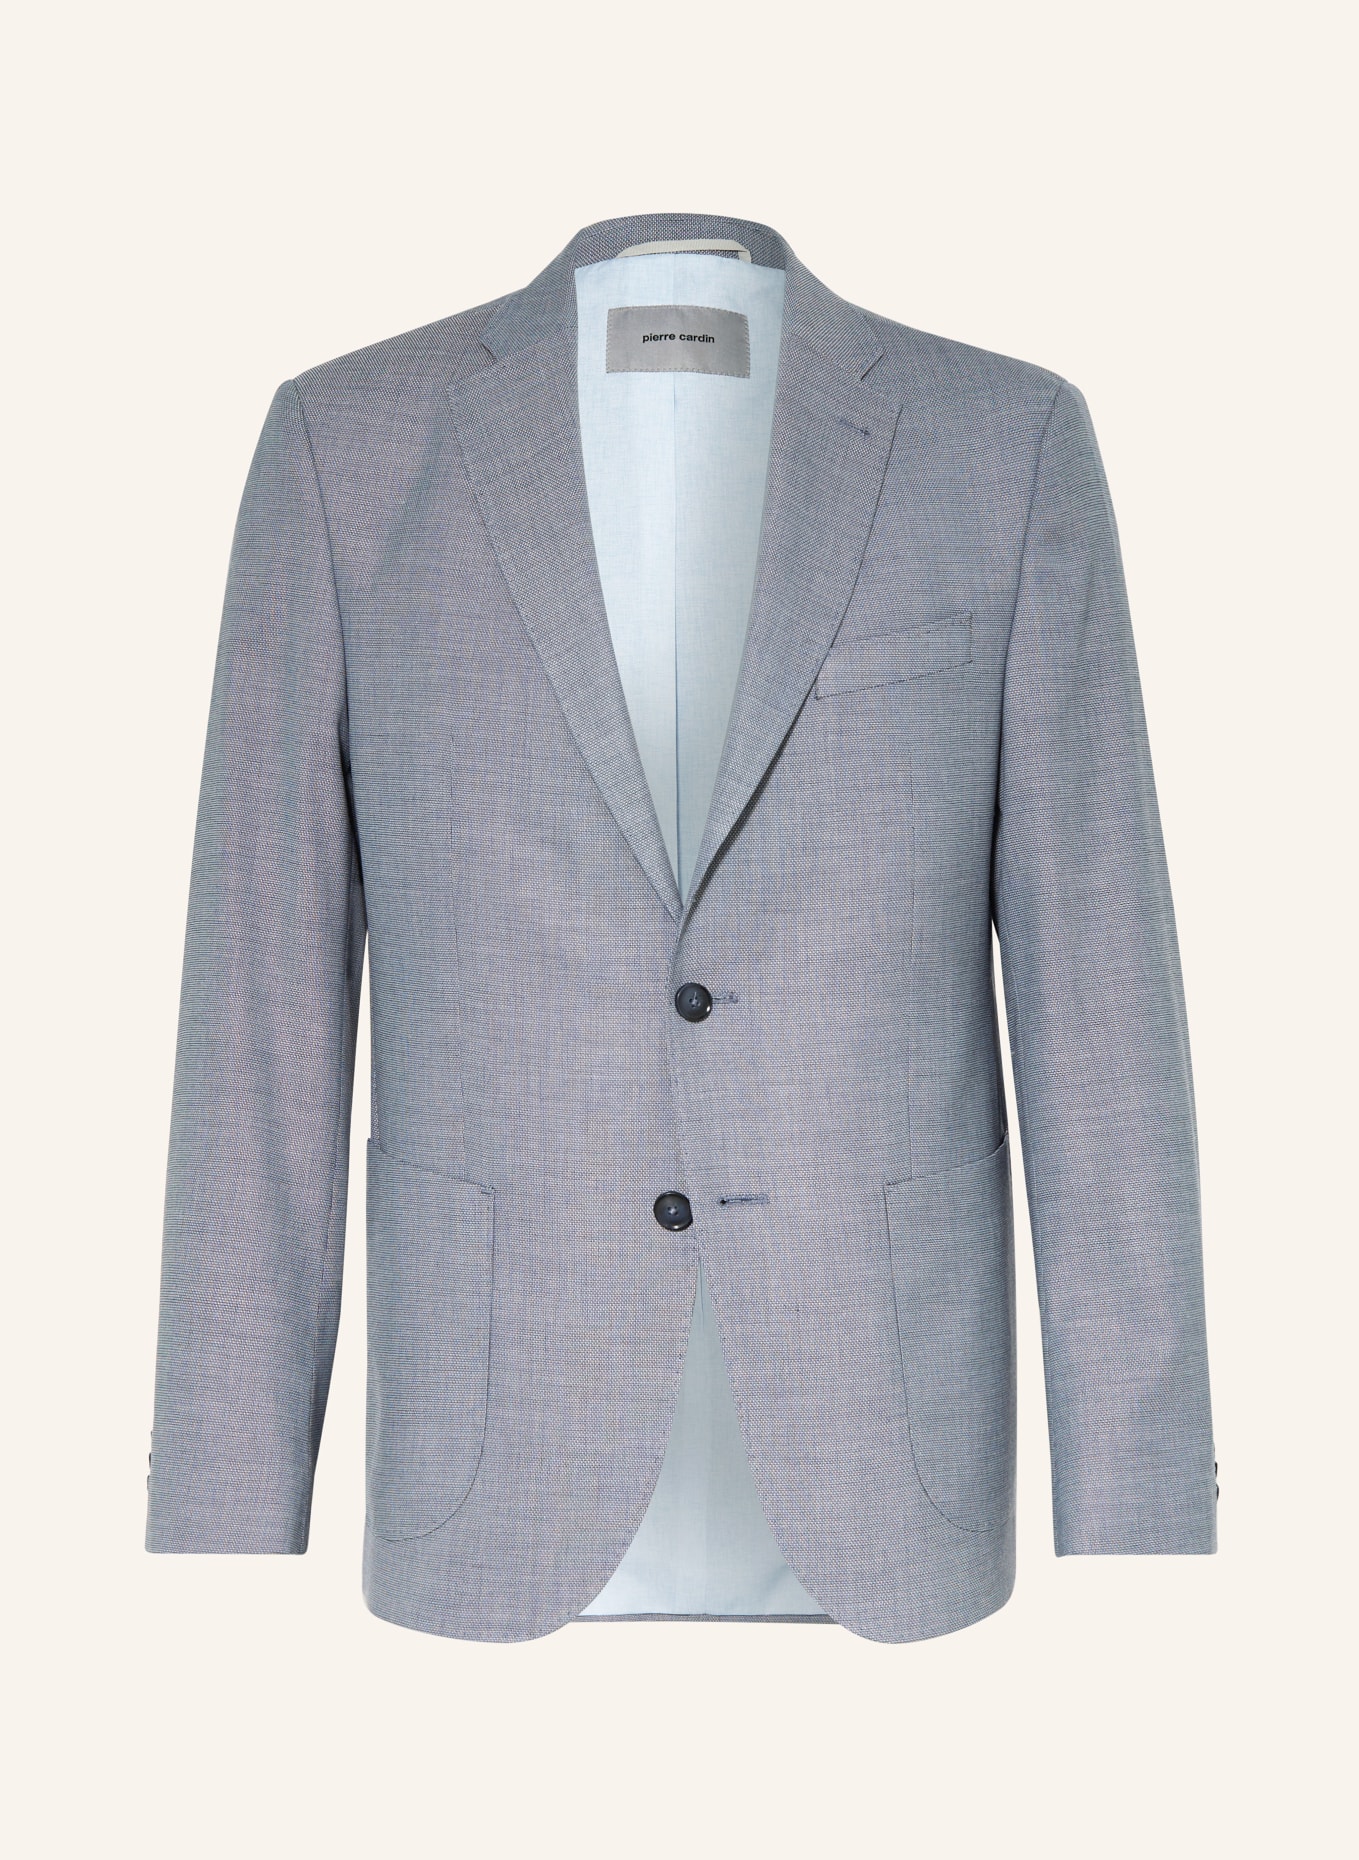 pierre cardin Suit jacket MICHEL regular fit, Color: 6227 Copen Blue (Image 1)